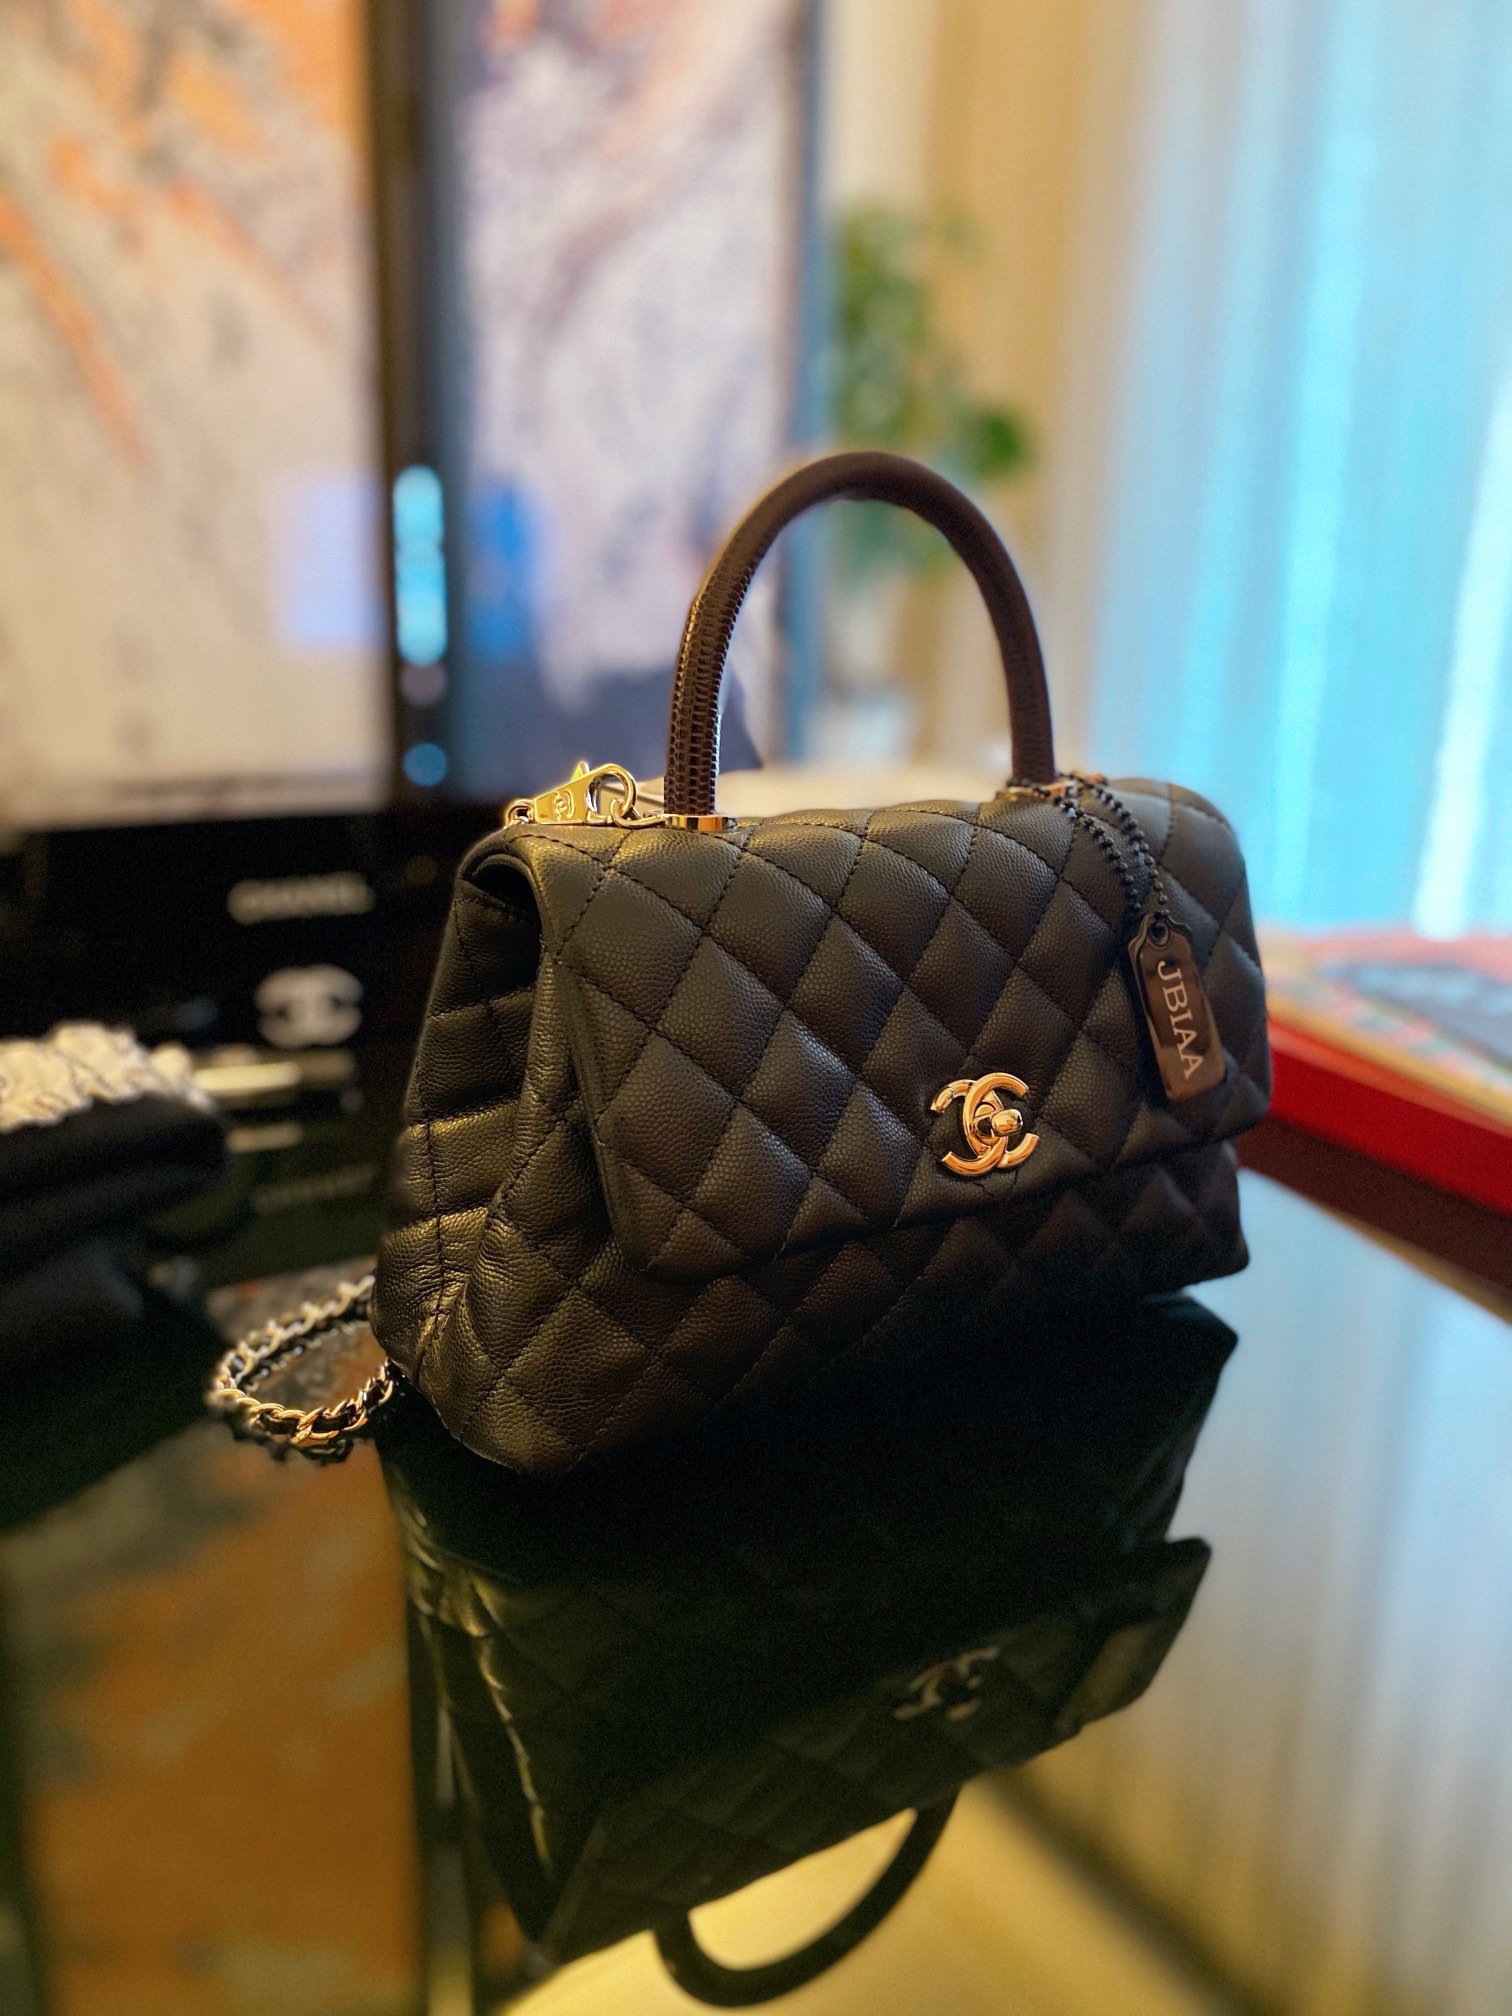 Trở nên sang trọng với túi xách Chanel | Bộ sưu tập do Chang Chang đăng |  Lemon8